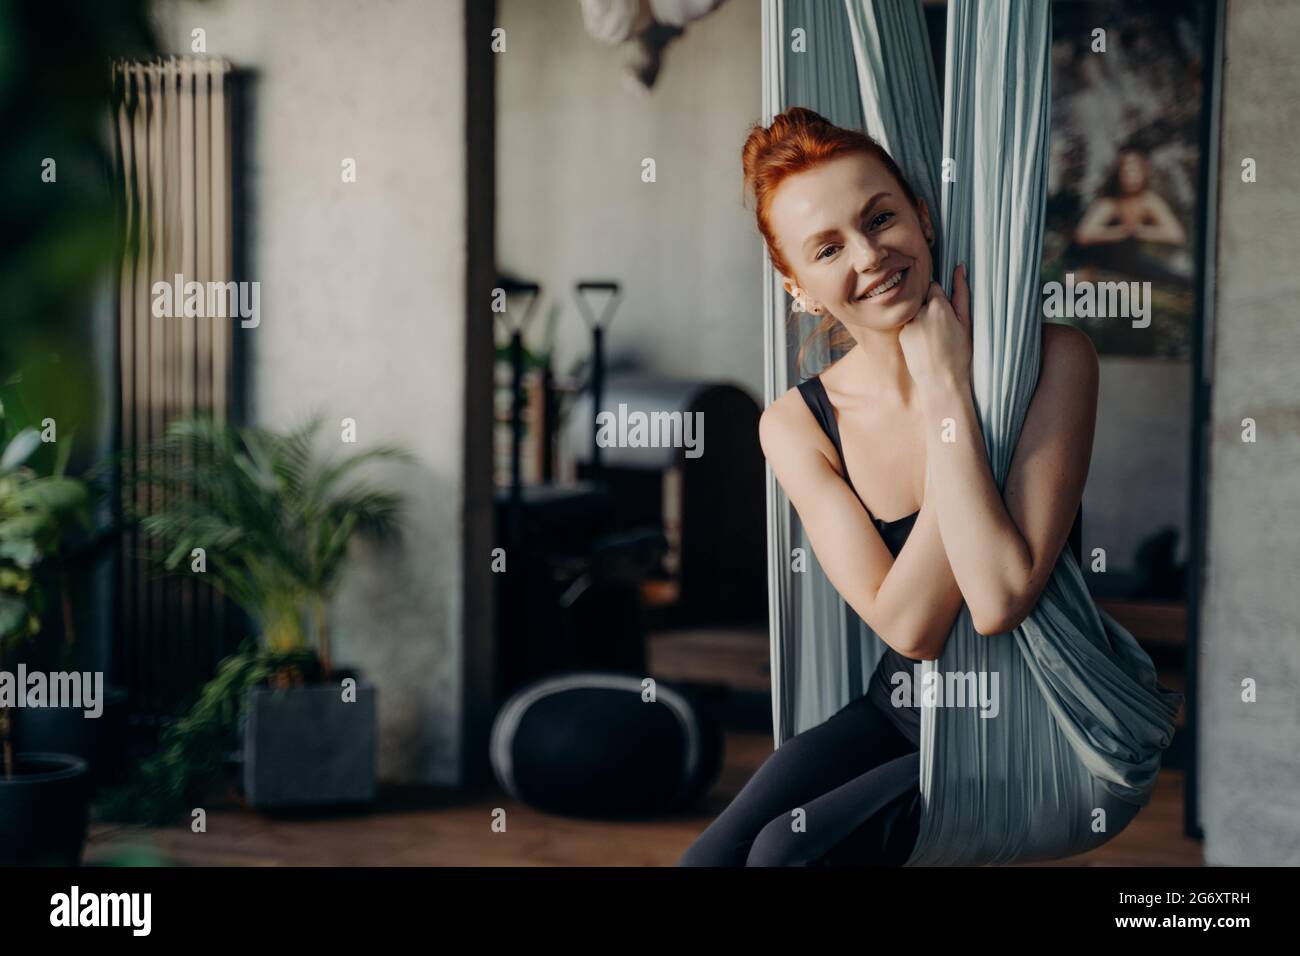 Glückliche rothaarige Frau, die in bequemer Position in der Yogamatte sitzt Stockfoto